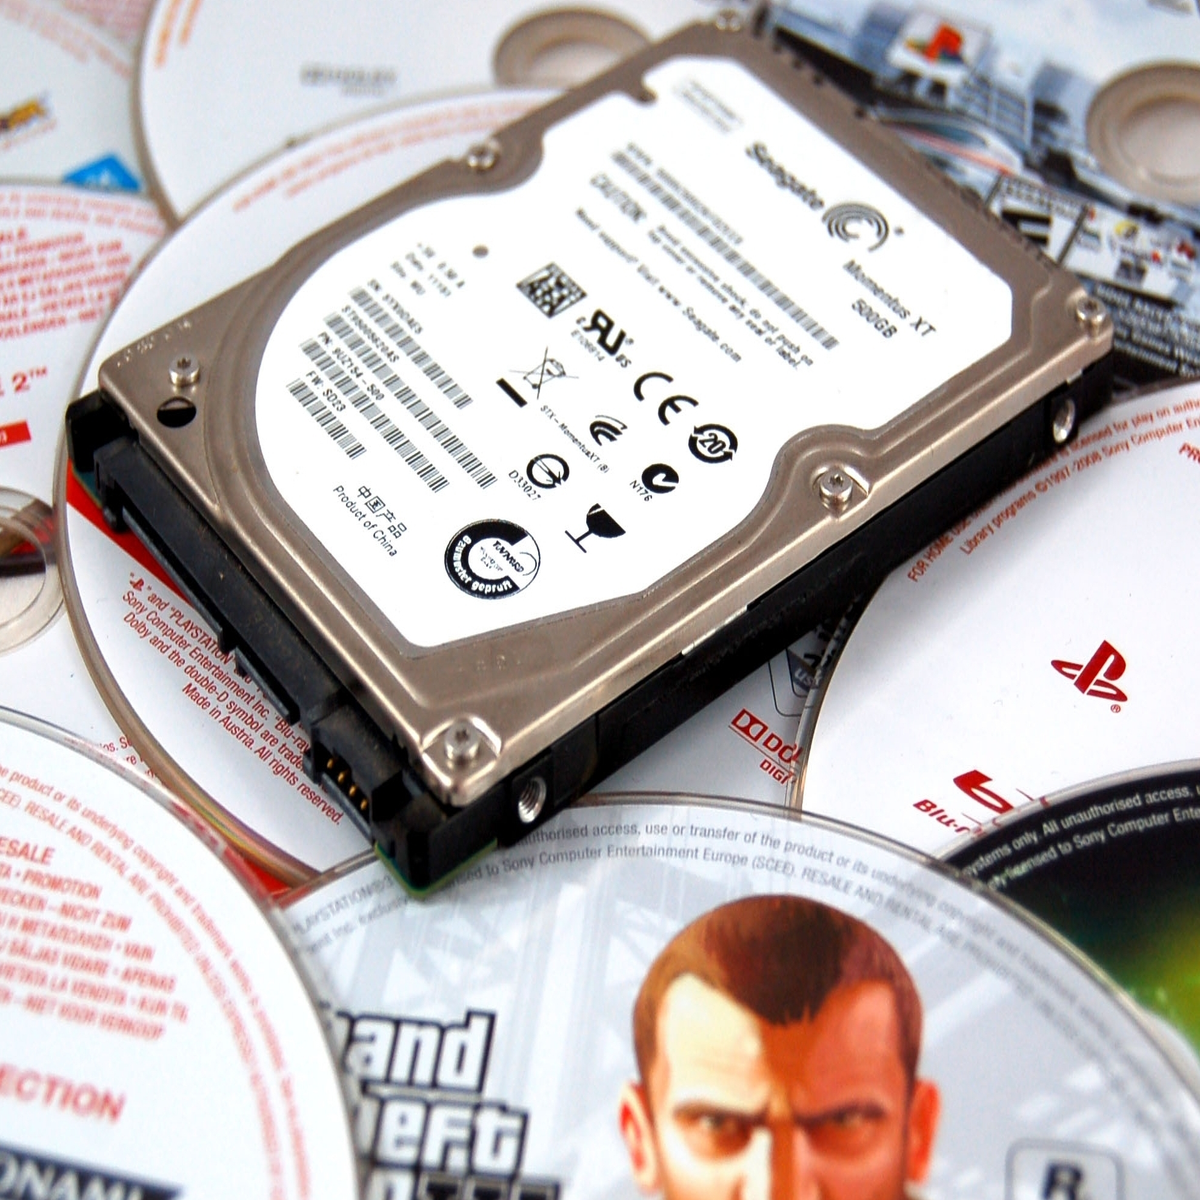 Estrecho Cartas credenciales perdón PS3: disco vs. descarga | Eurogamer.es